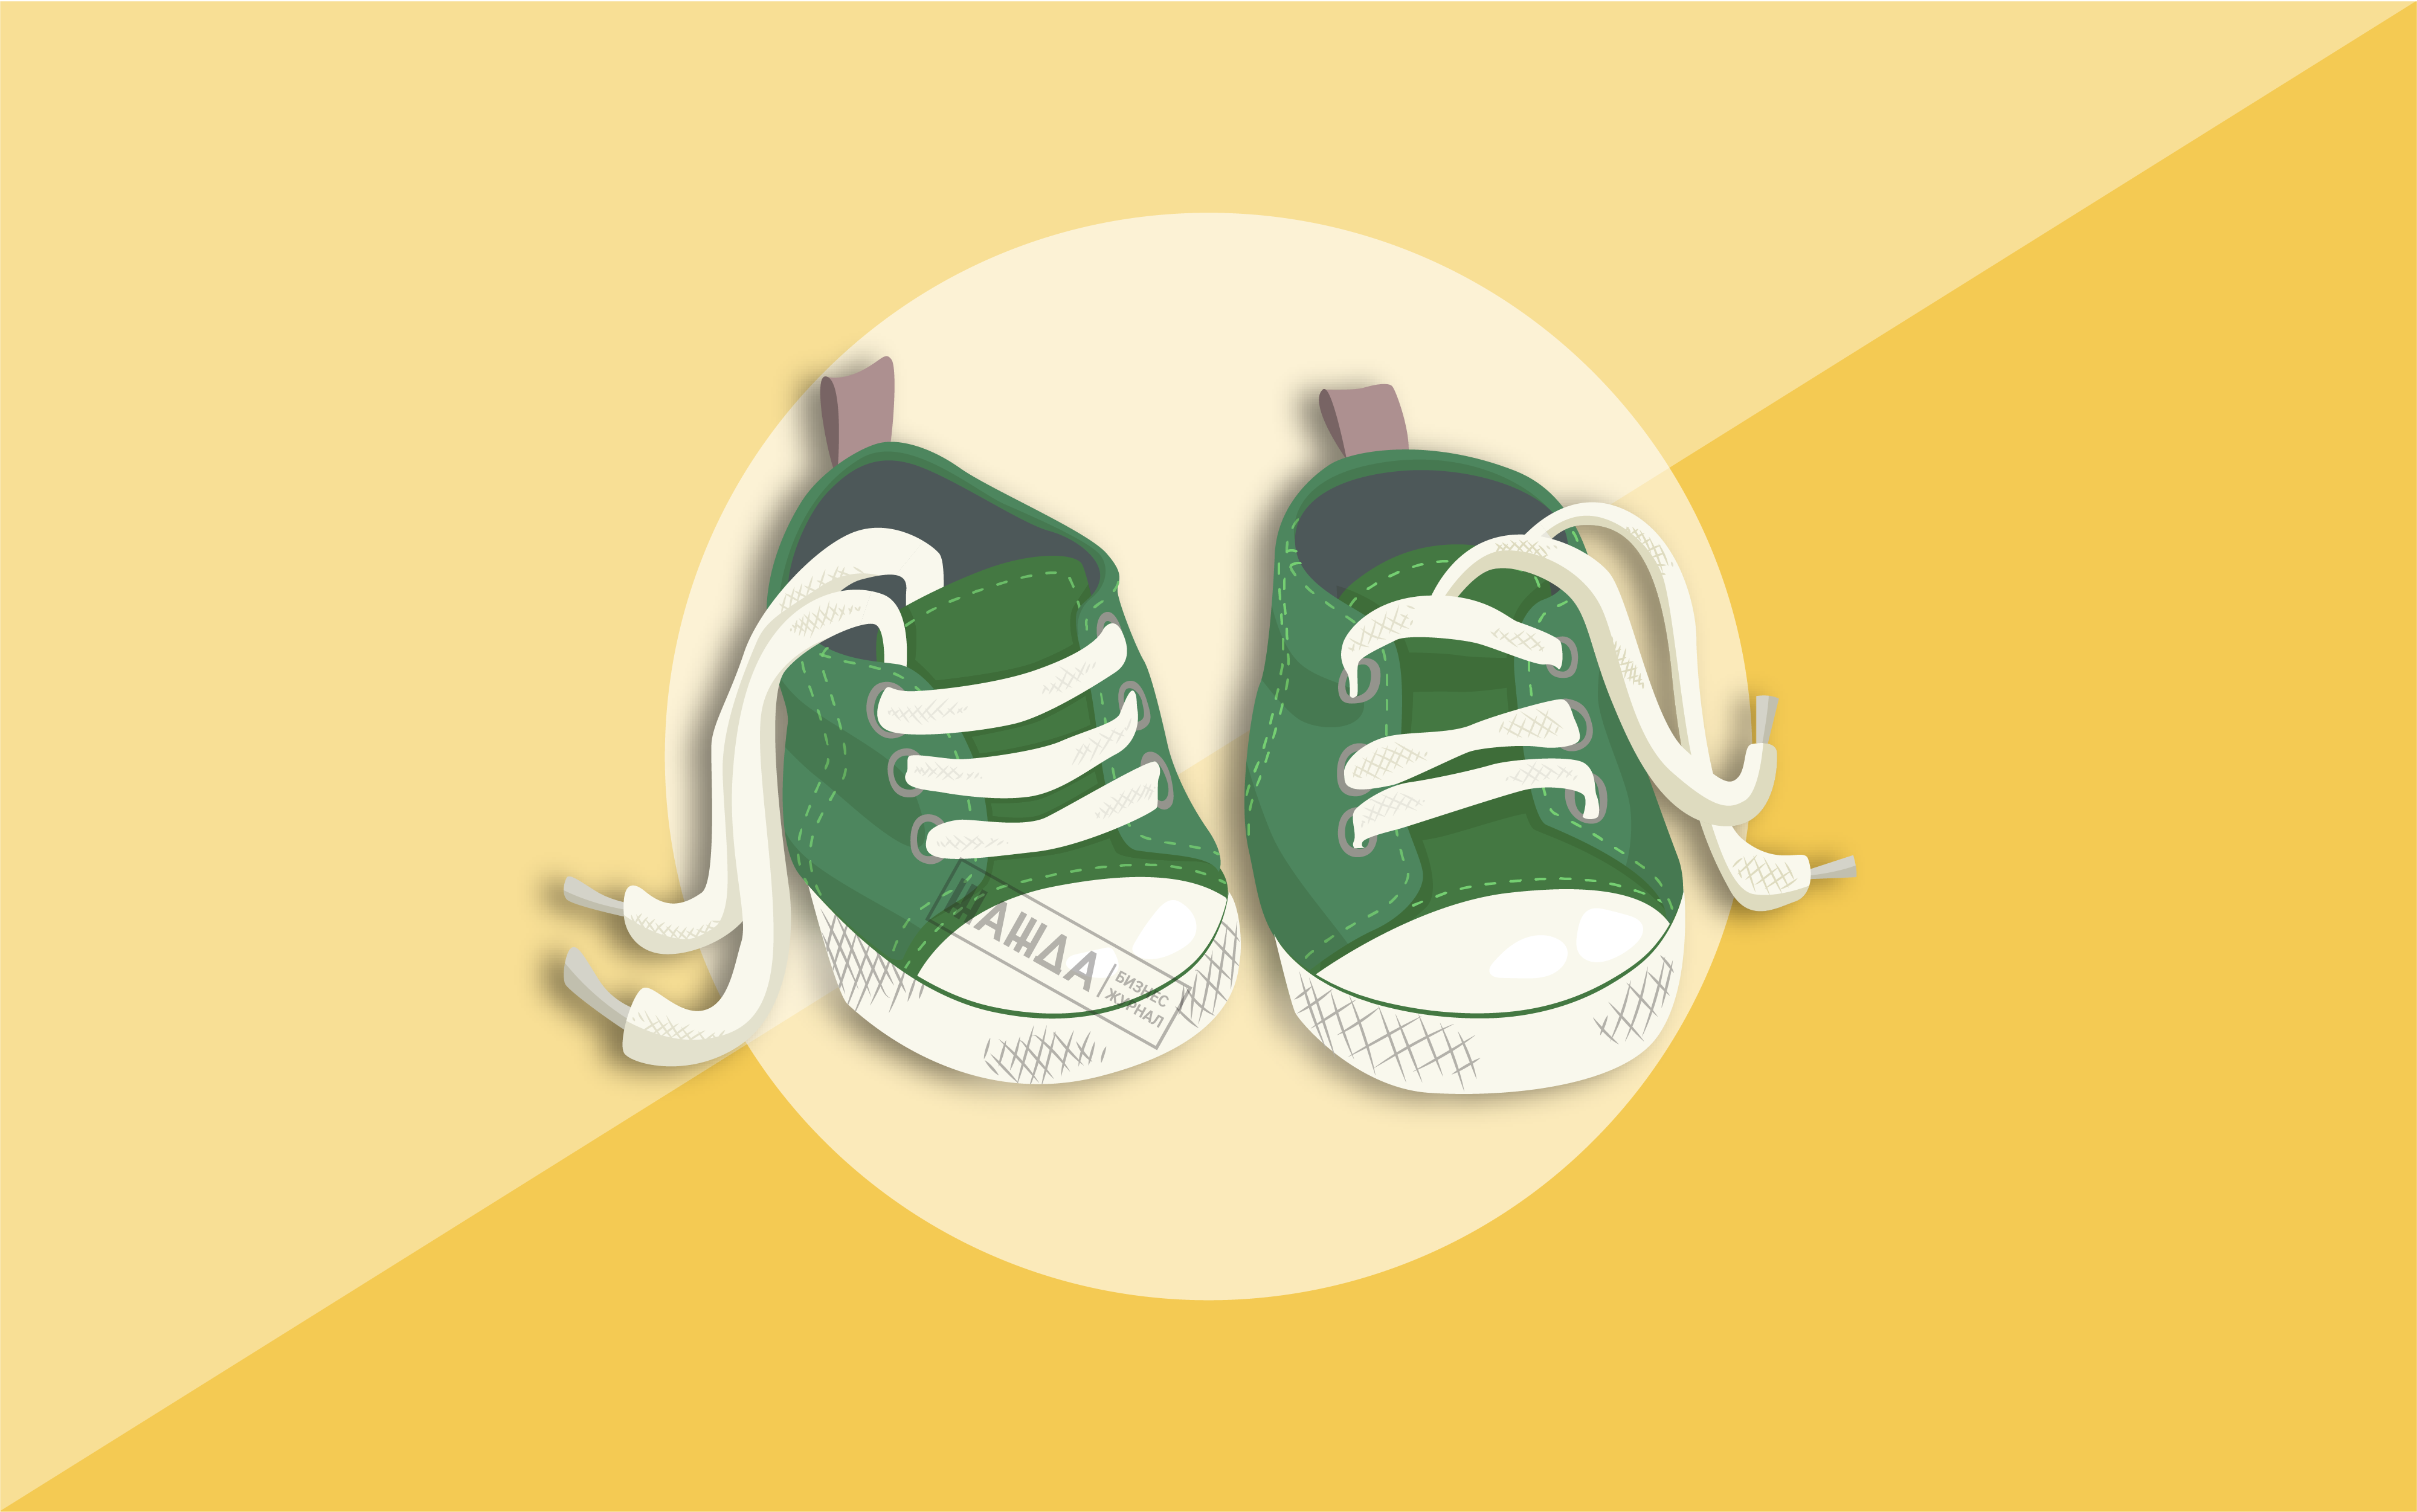 Сайты Интернет Магазинов Детской Обуви